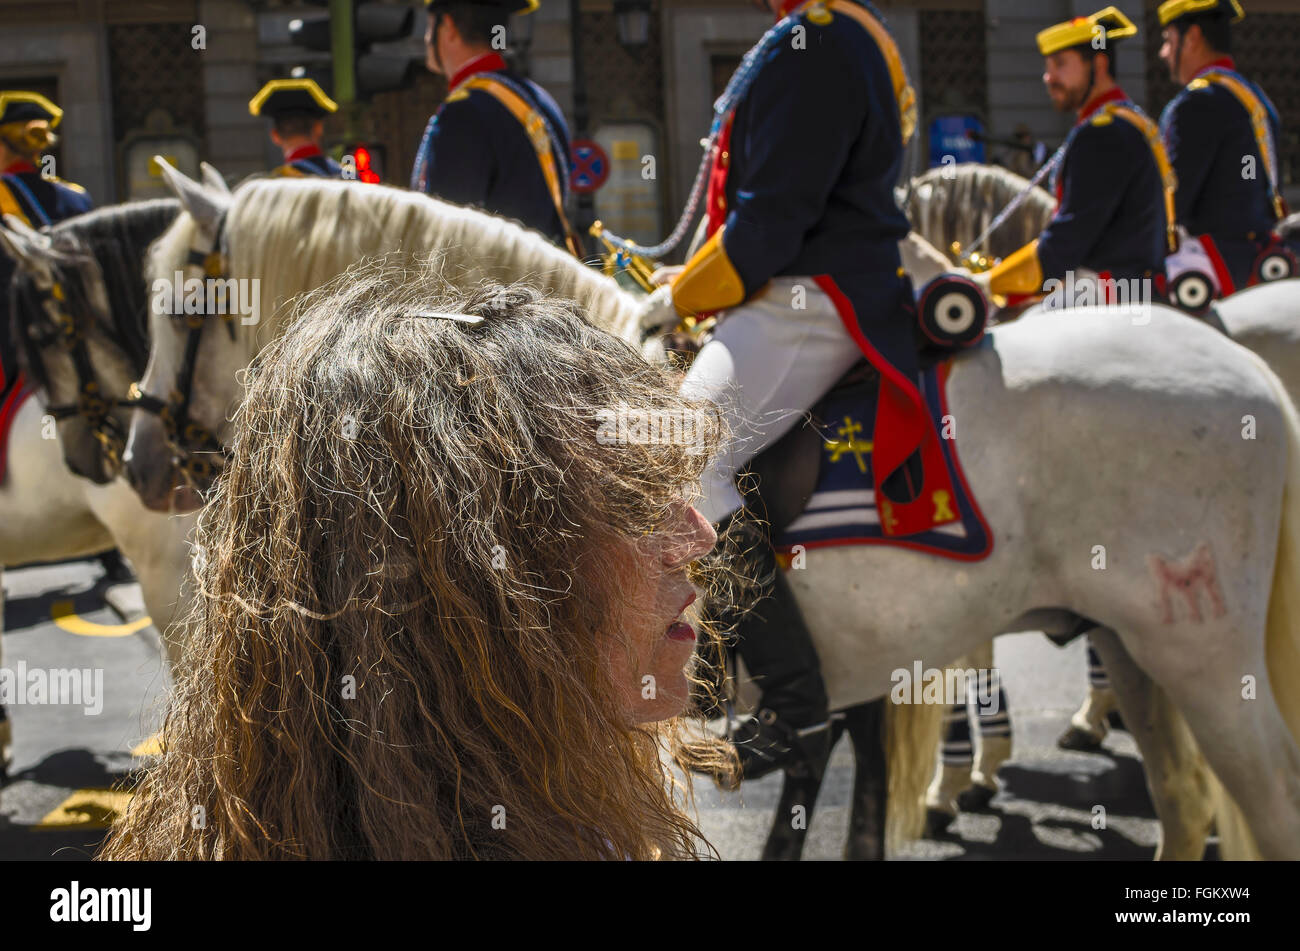 Vista di una donna con capelli biondi chiusa in uno dei cavalli bianchi in Calle Alcala, città di Madrid, Spagna Foto Stock